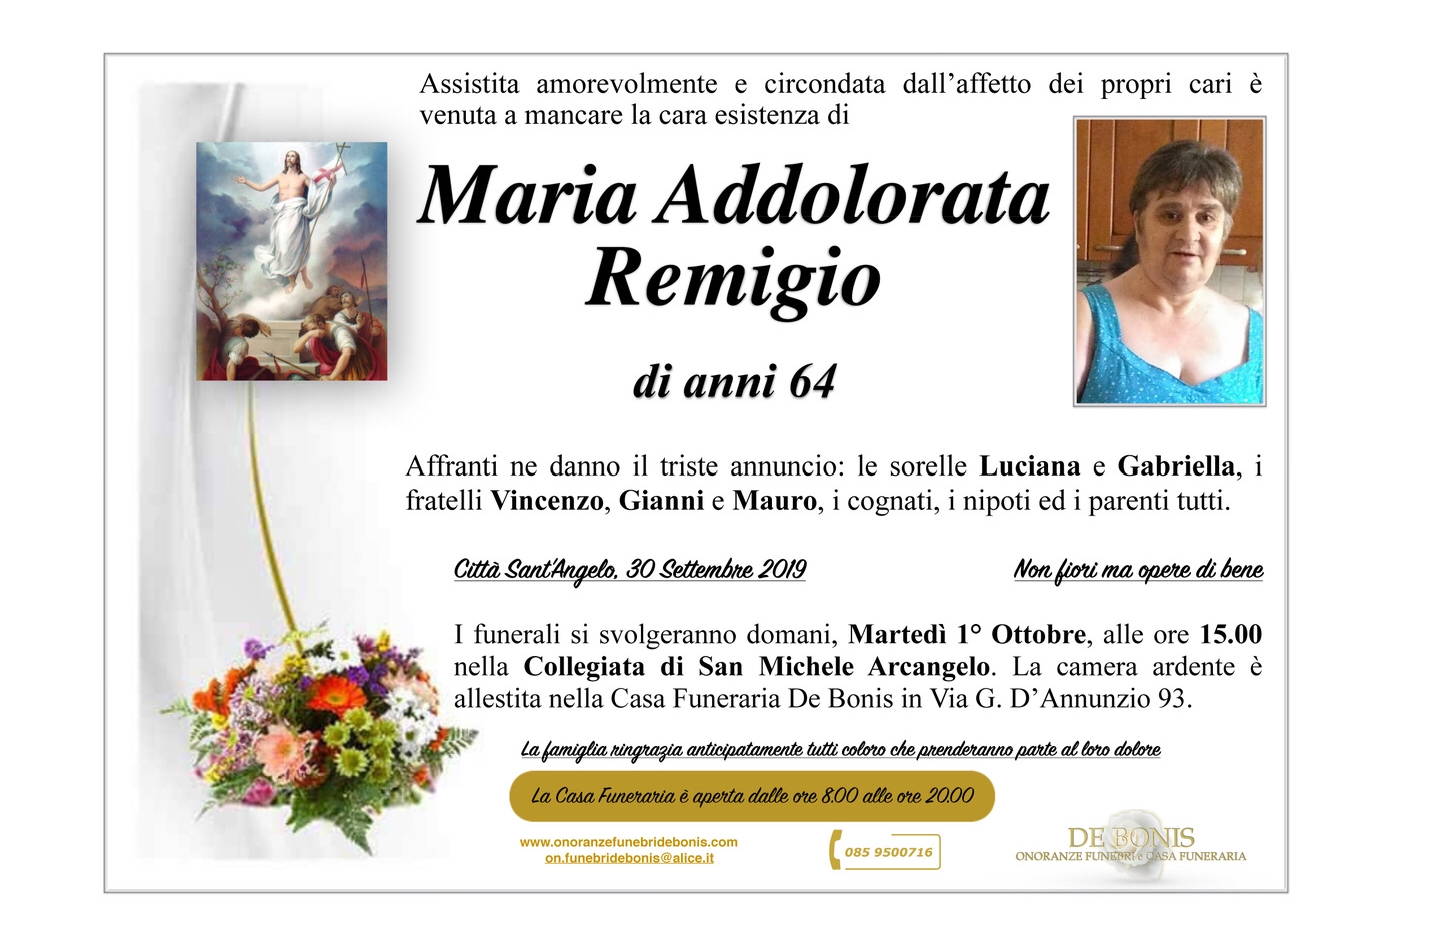 Maria Addolorata Remigio